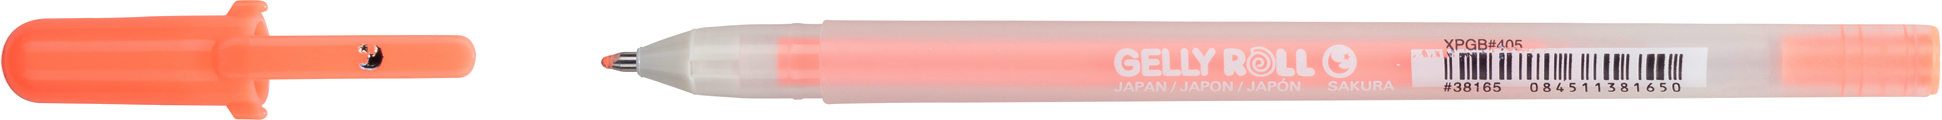 SAKURA Gelly Roll 0.5mm XPGB405 Moonlight Fluo orange